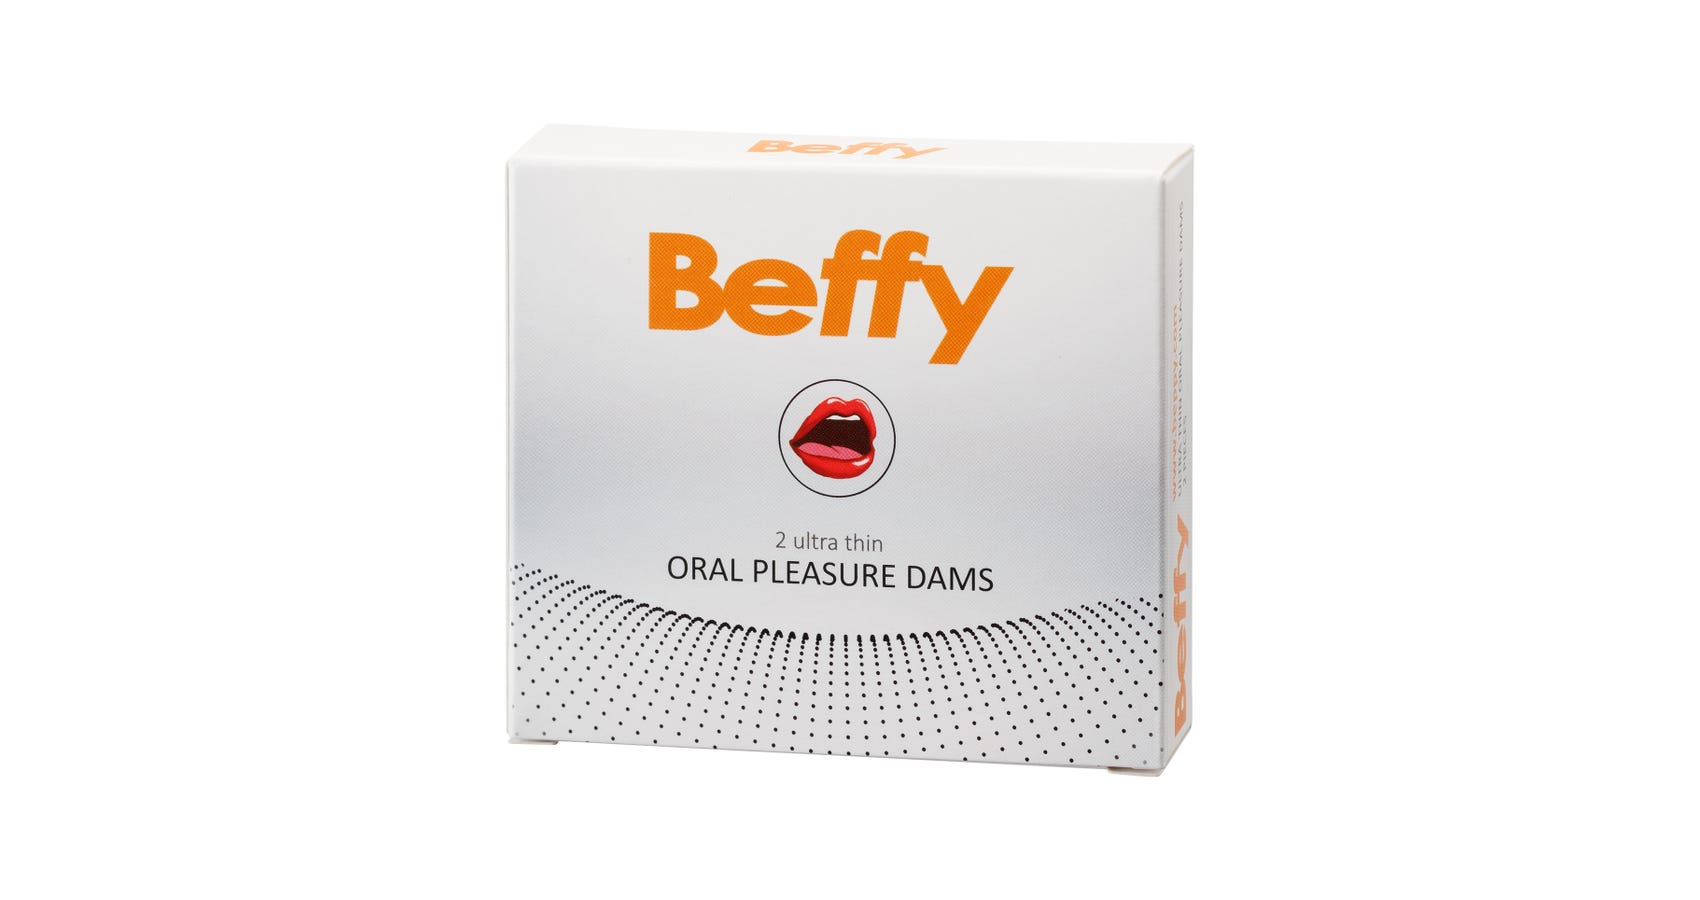 Beffy Oral Dams Slikkelapper Kjøp Online Her